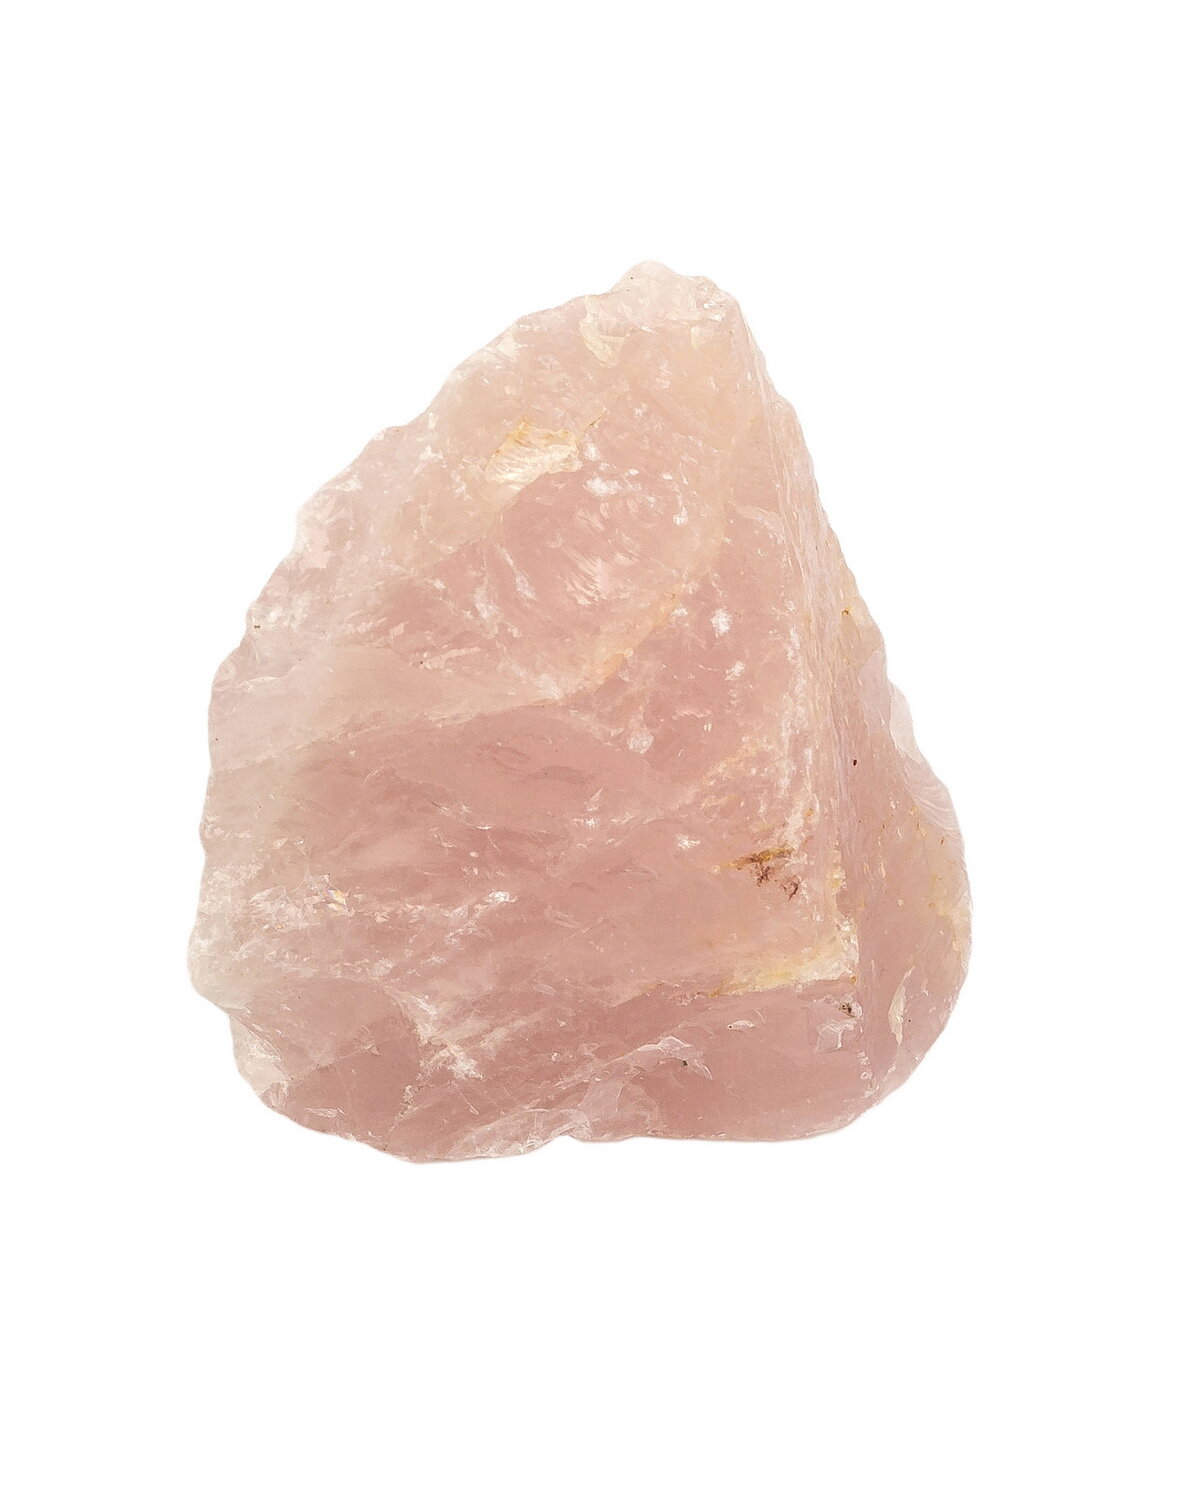 Образец минерала Кварц розовый, вес 76-100 г, 1 шт.